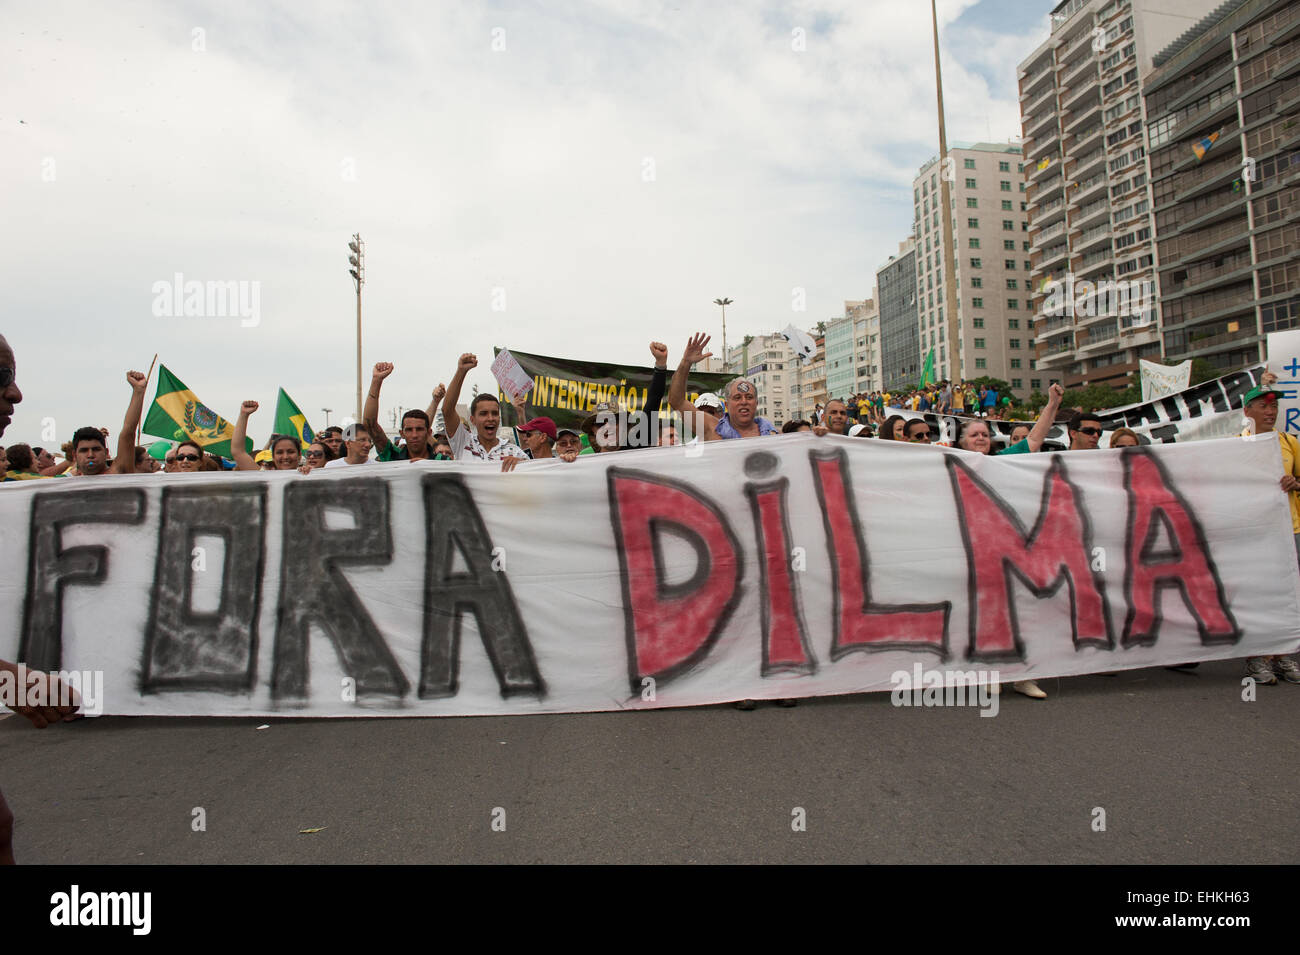 Demonstranten tragen eine Banner mit "FORA DILMA" (Dilma aus). Rio De Janeiro, Brasilien, 15. März 2015. Beliebte Demonstration gegen die Präsidentin Dilma Rousseff in Copacabana. Foto © Sue Cunningham sue@scphotographic.com. Stockfoto